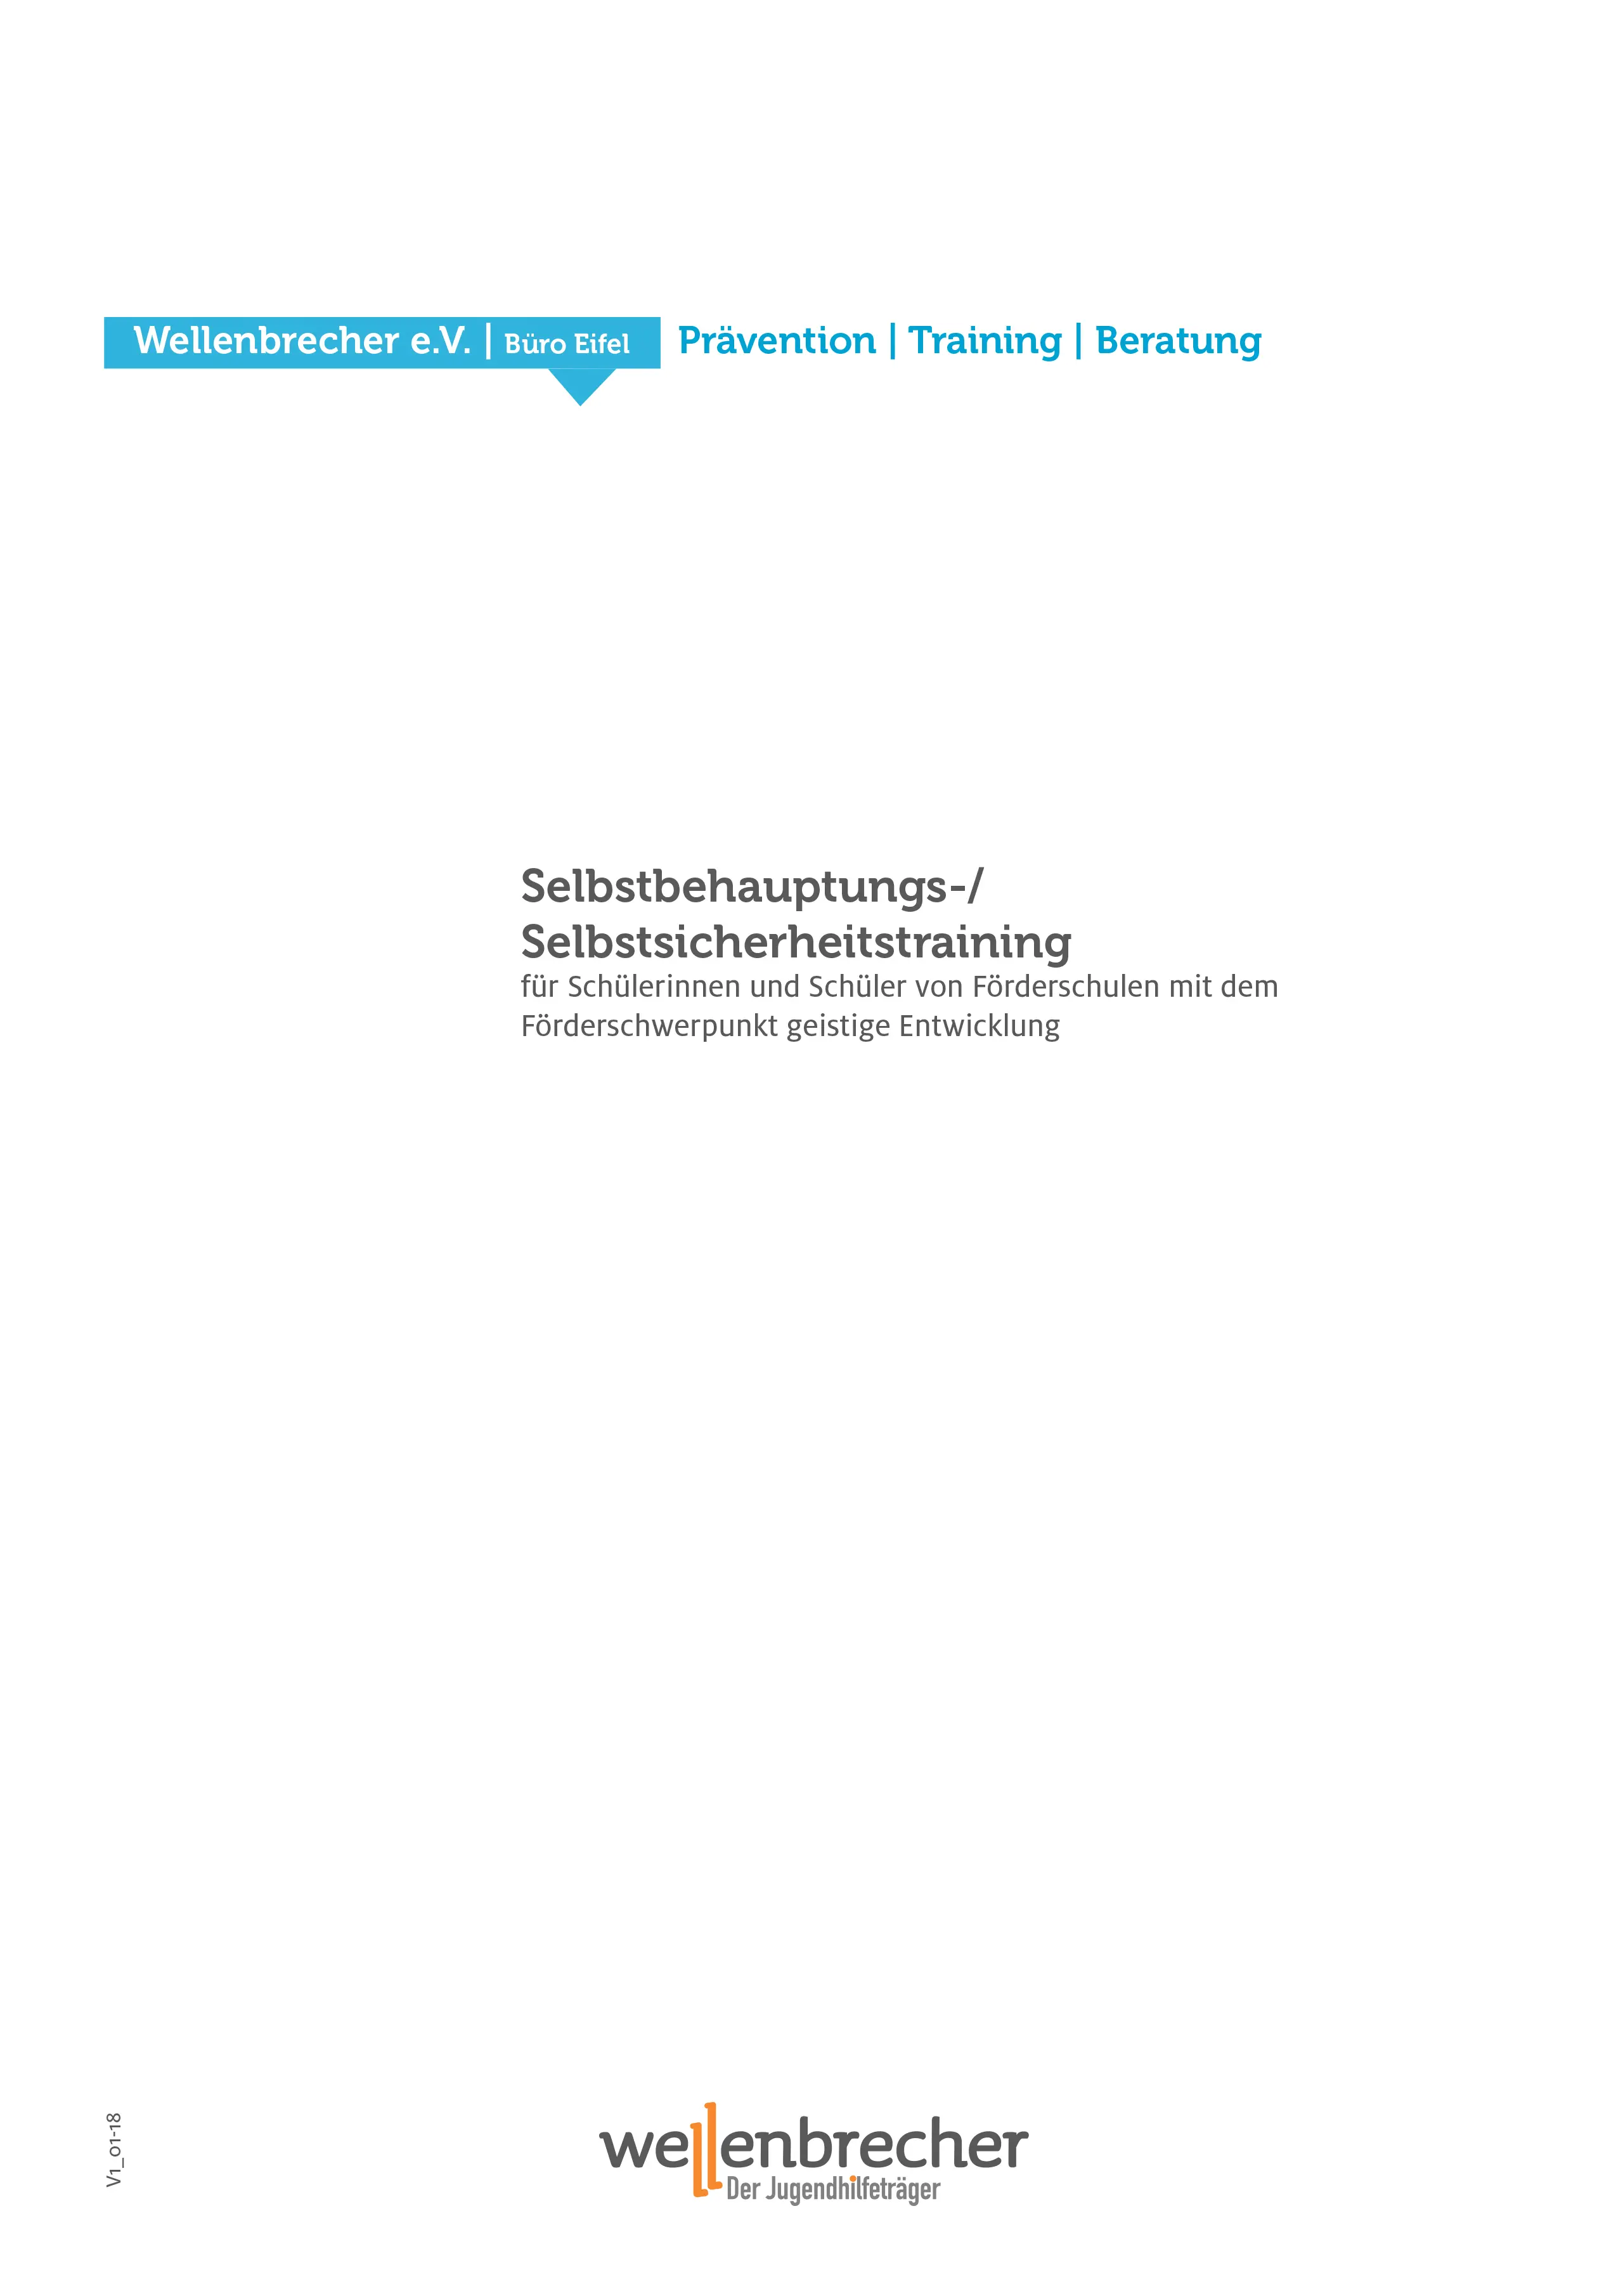 Titelseite Fortbildung Selbstbehauptungs-/Selbstsicherheitstraining für Schülerinnen und Schüler von Förderschulen mit dem Förderschwerpunkt geistige Entwicklung